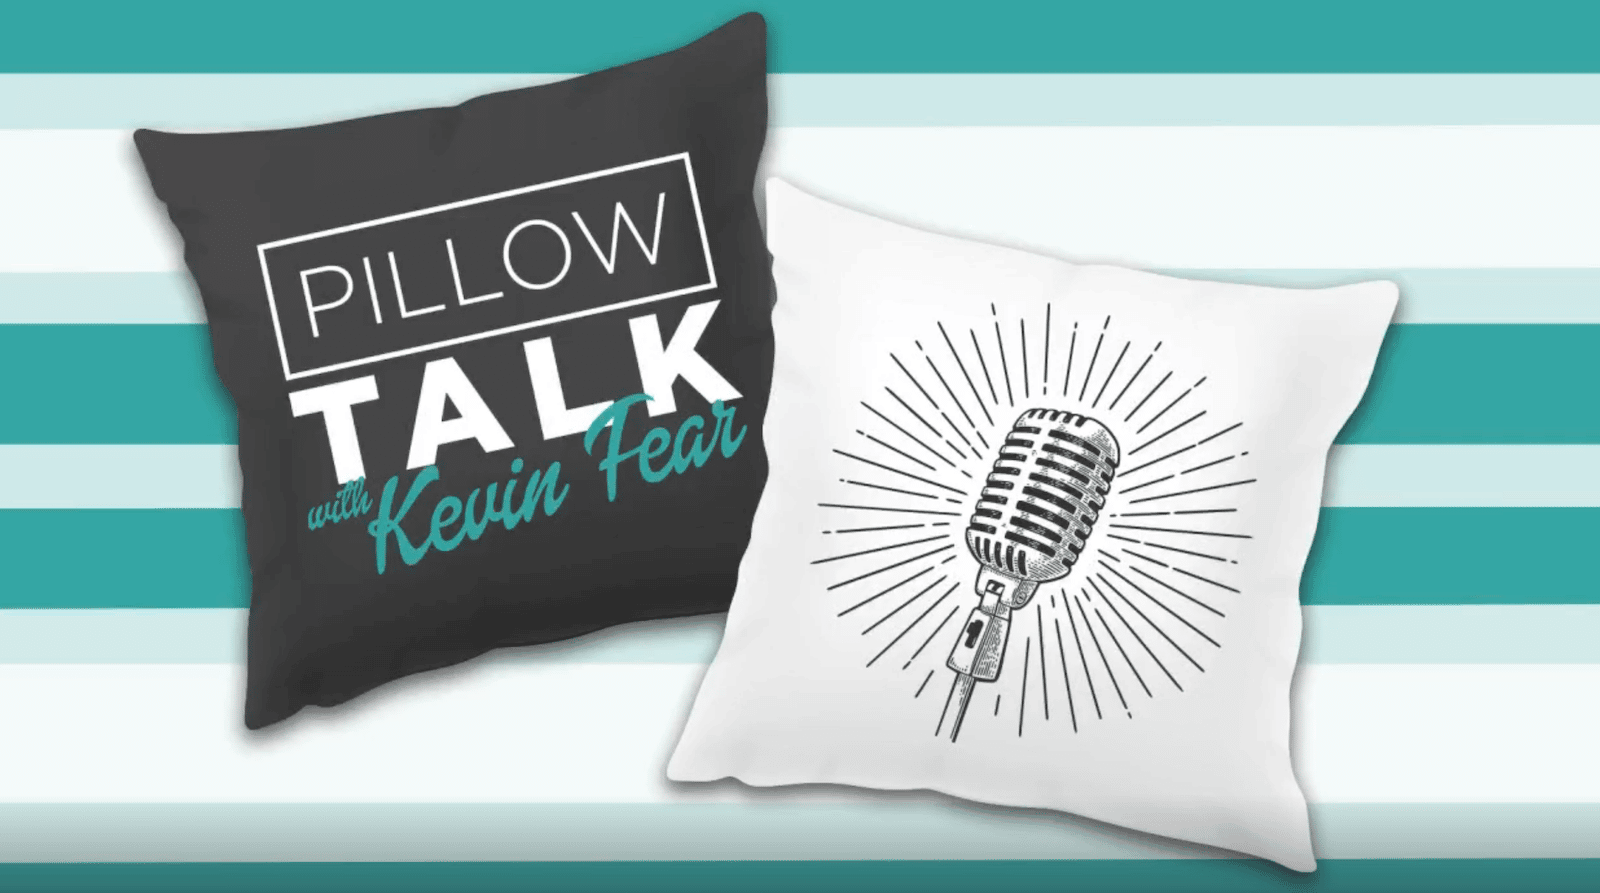 Pillow talk Mattress Express